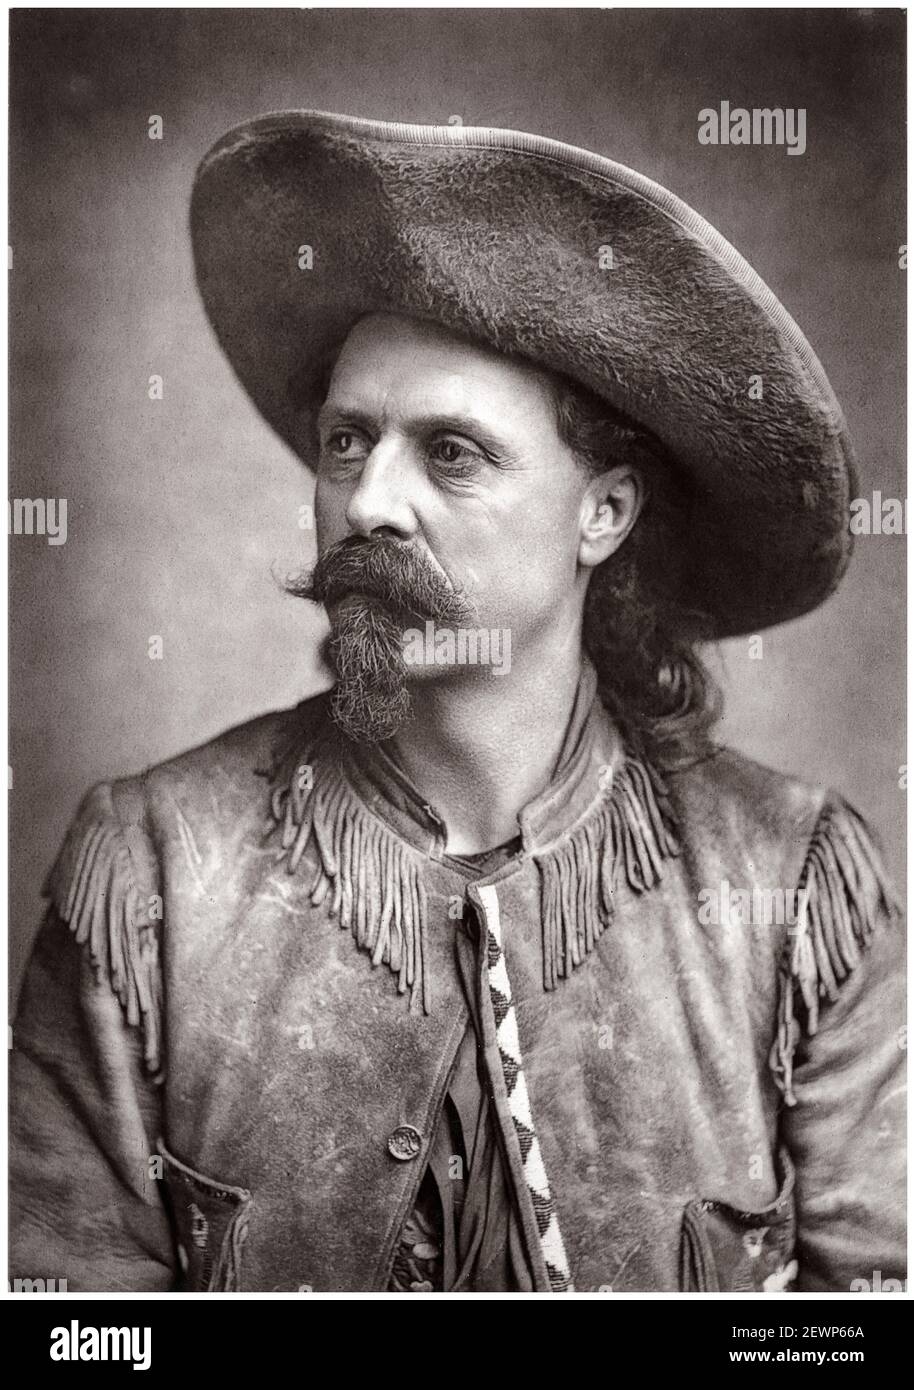 Buffalo Bill Cody (William Frederick Cody, 1846-1917), soldato americano, cacciatore di bisonti e showman, ritratto fotografico, 1887 Foto Stock